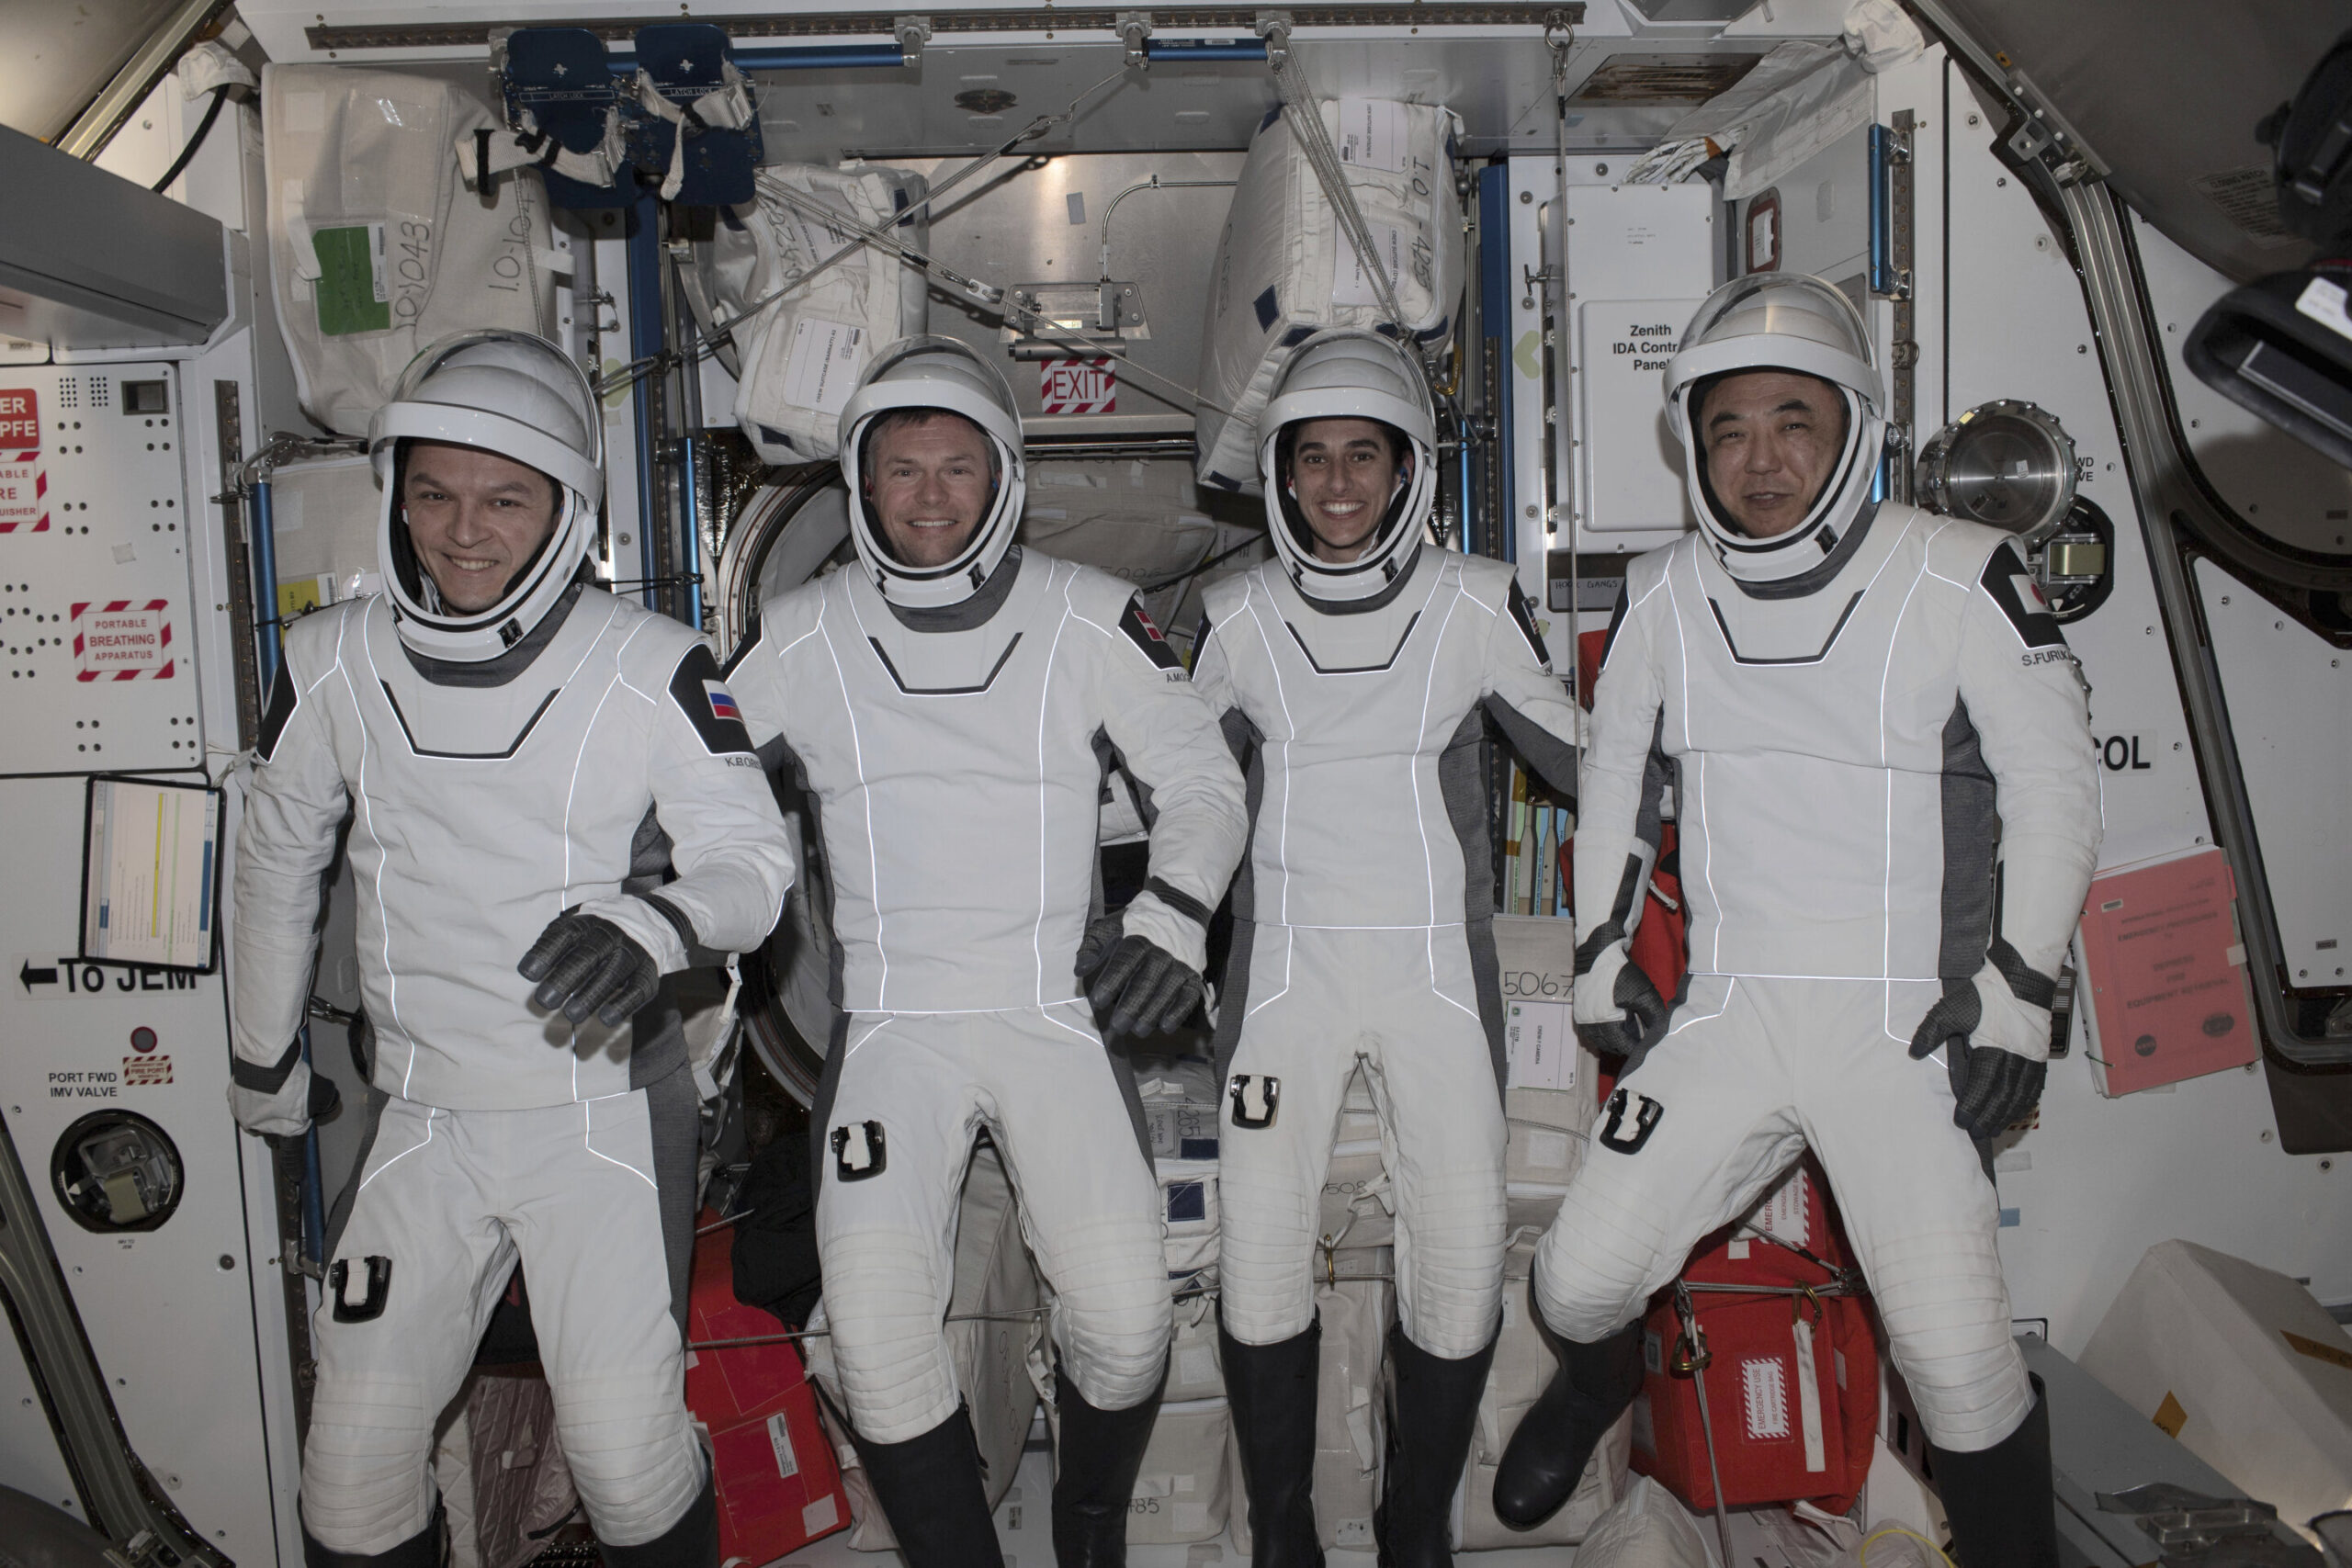 Četvero astronauta vratilo se na Zemlju nakon šestomjesečne misije u svemiru. Zasluge NASA.